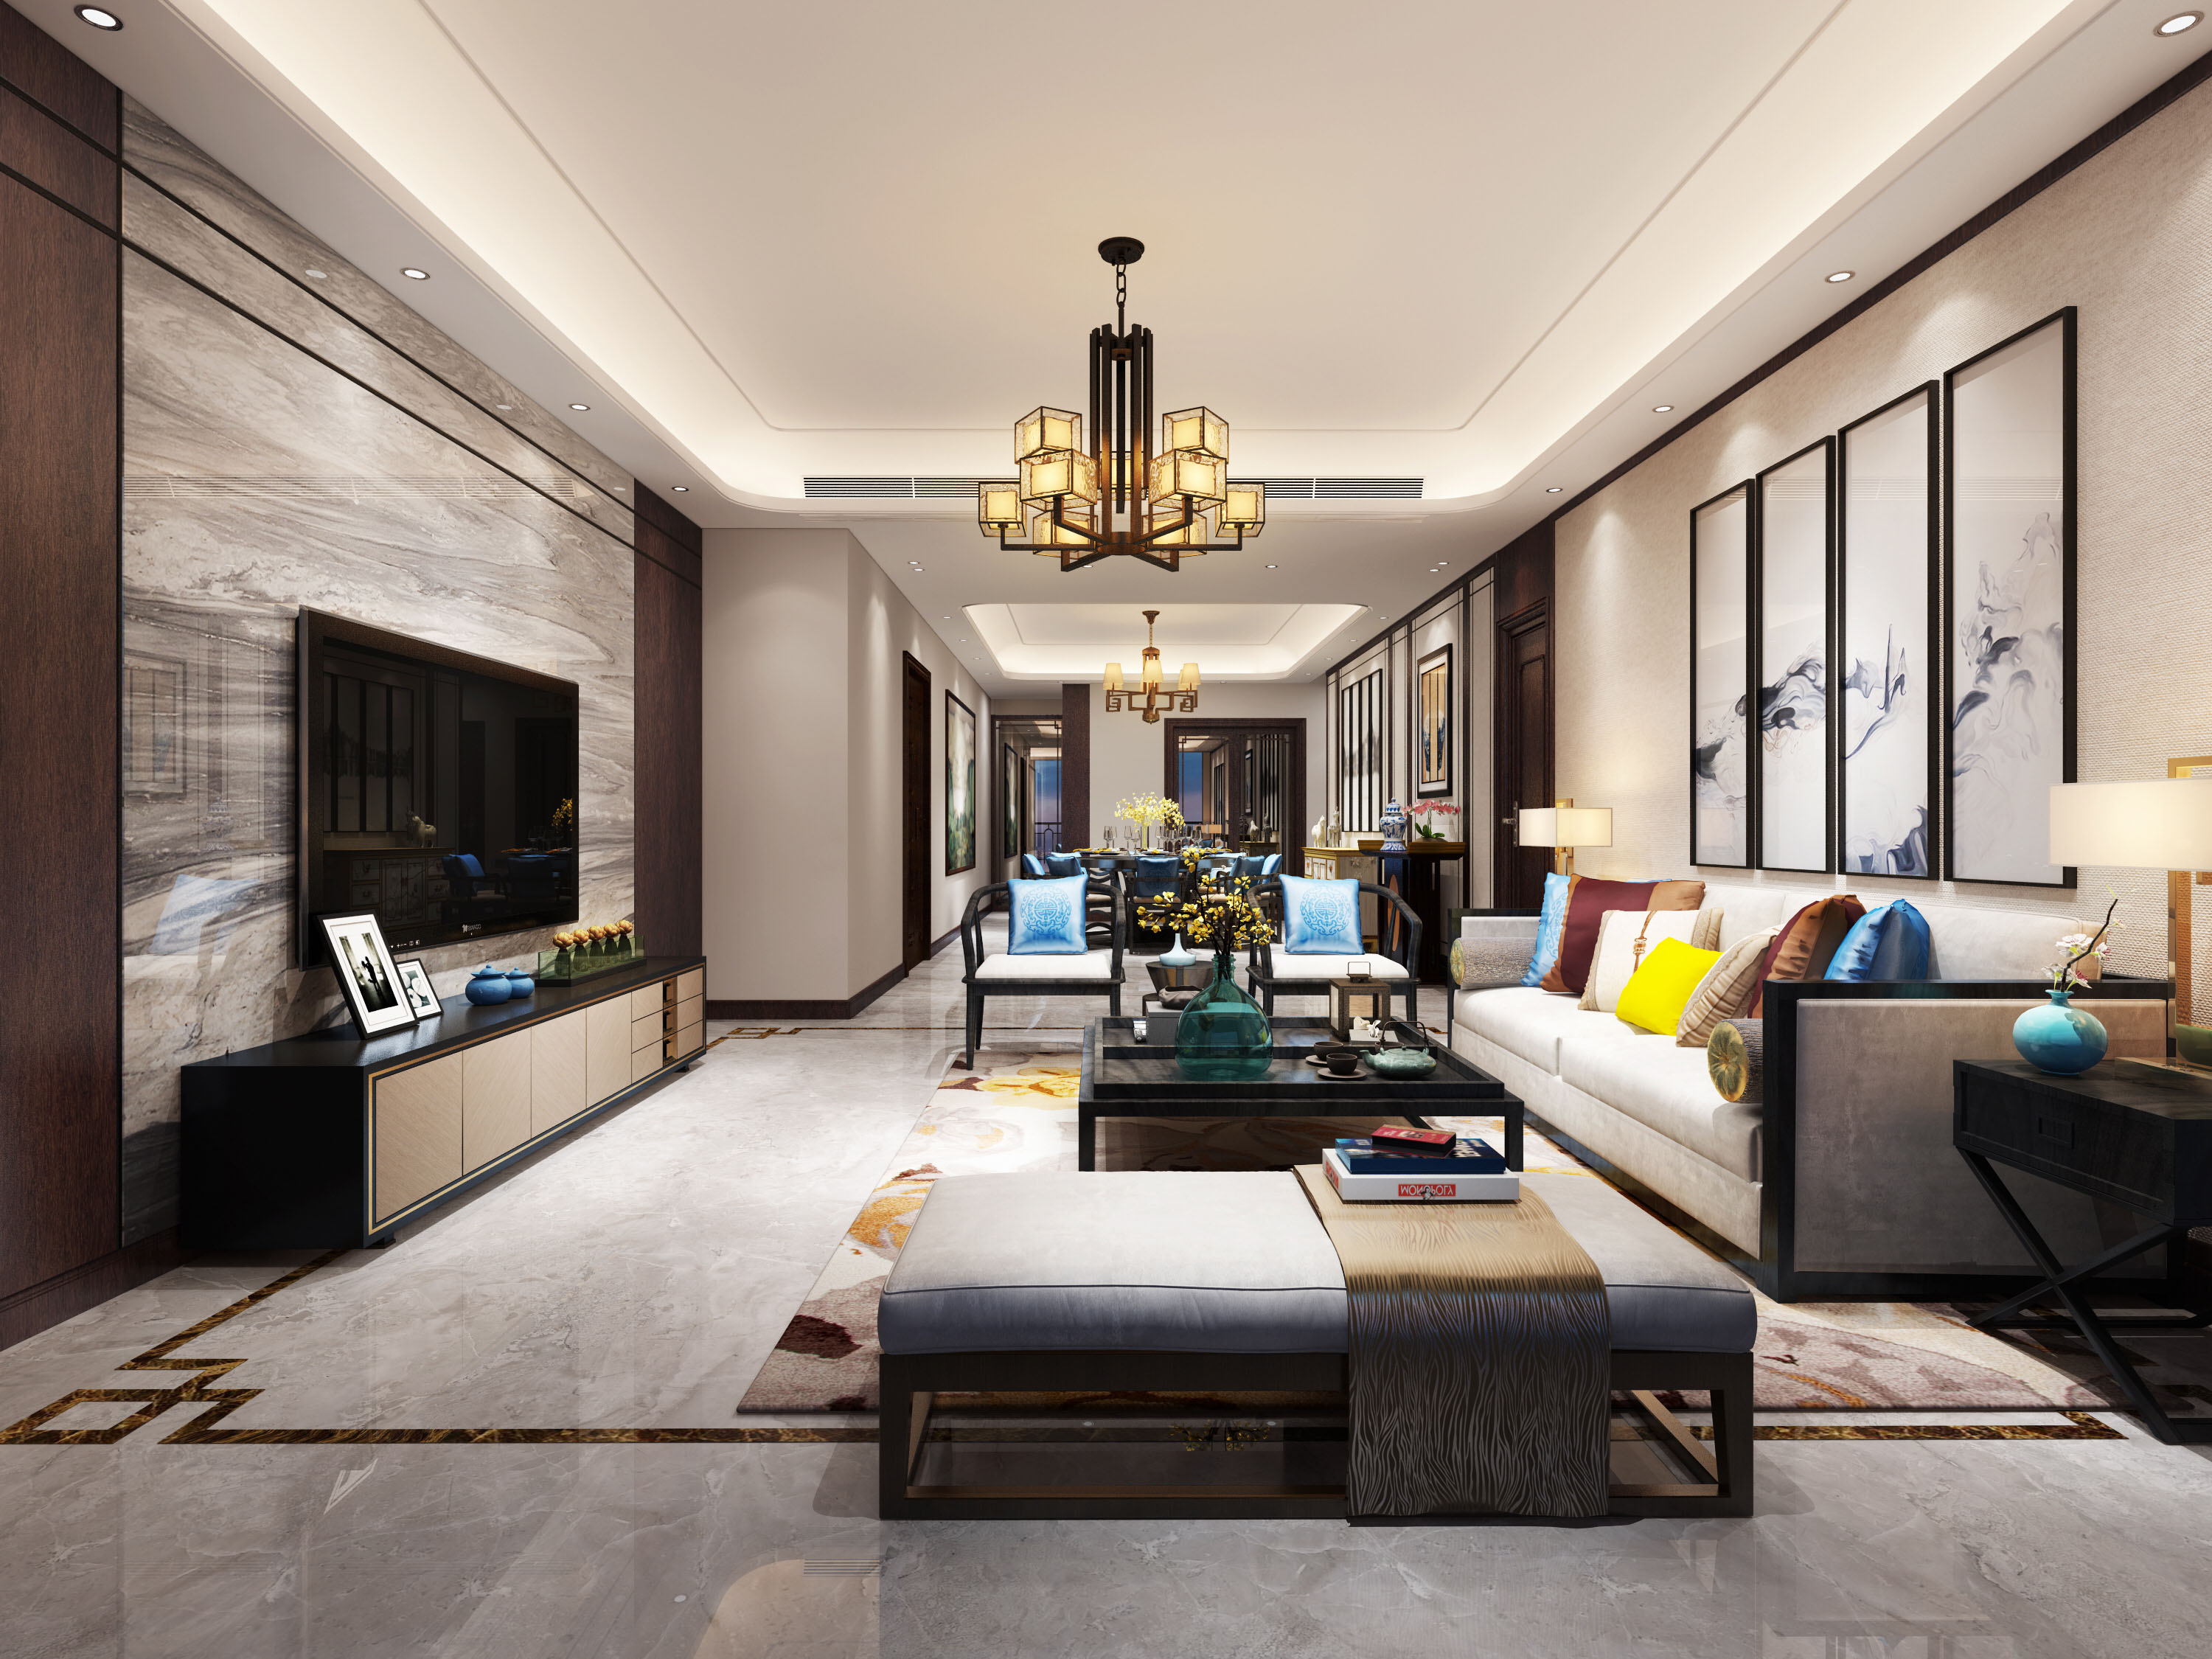 大康福盈门179平方米中式风格平层户型客厅装修效果图